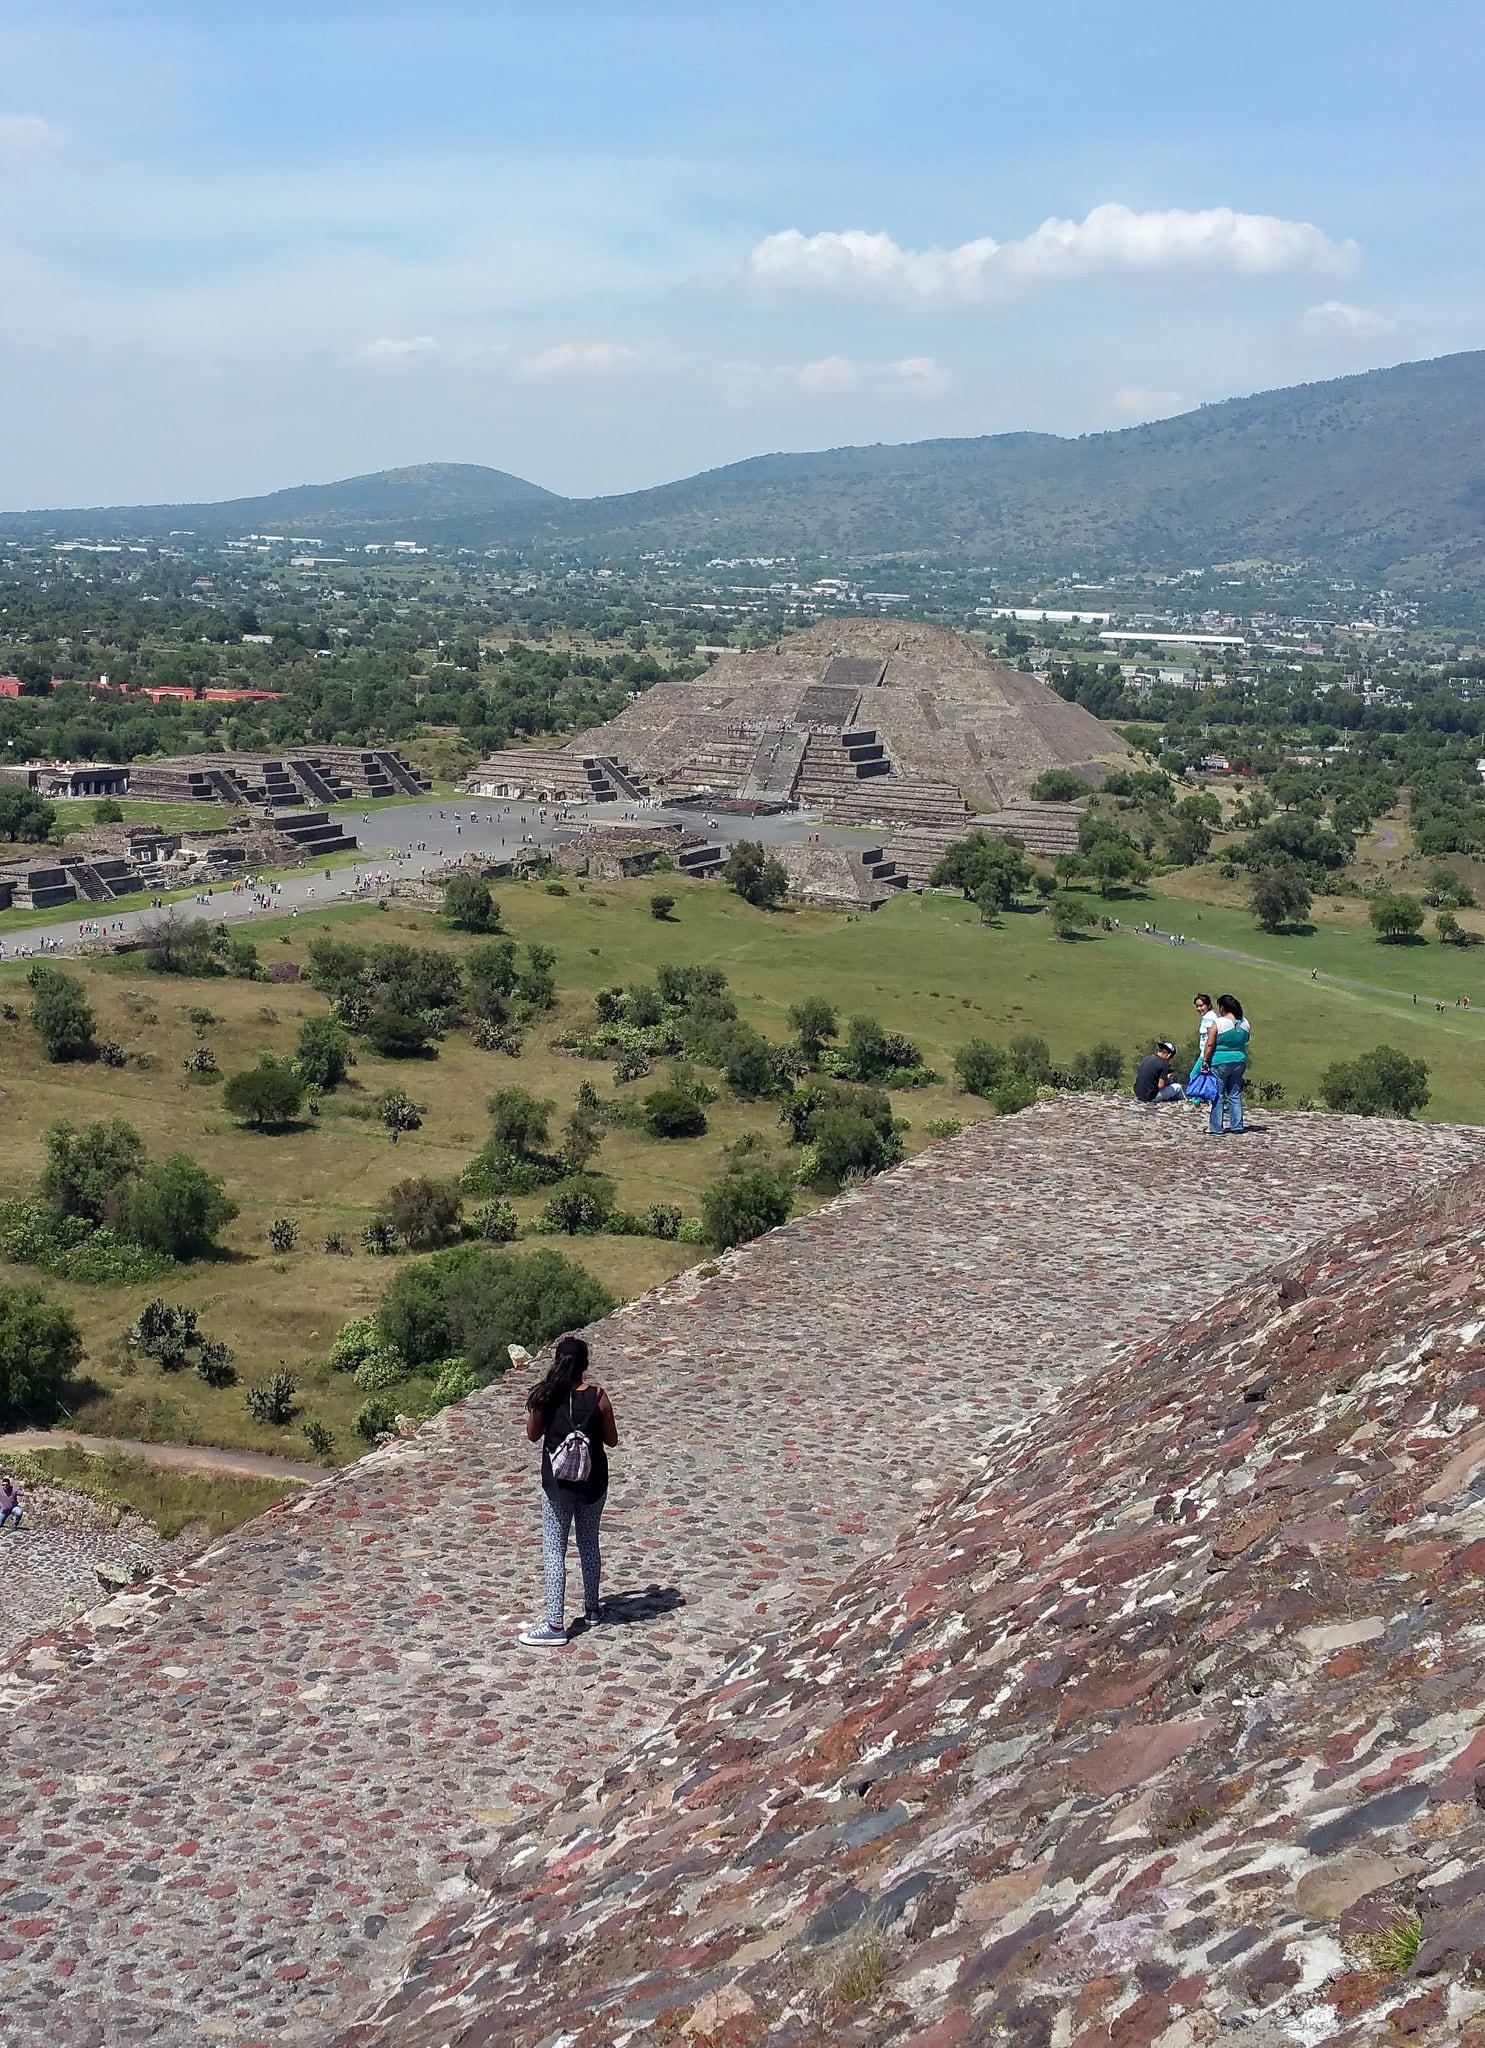 Pirámide de Sol の画像. city mexico df quetzalcoatl pirámides piramid teotihucán